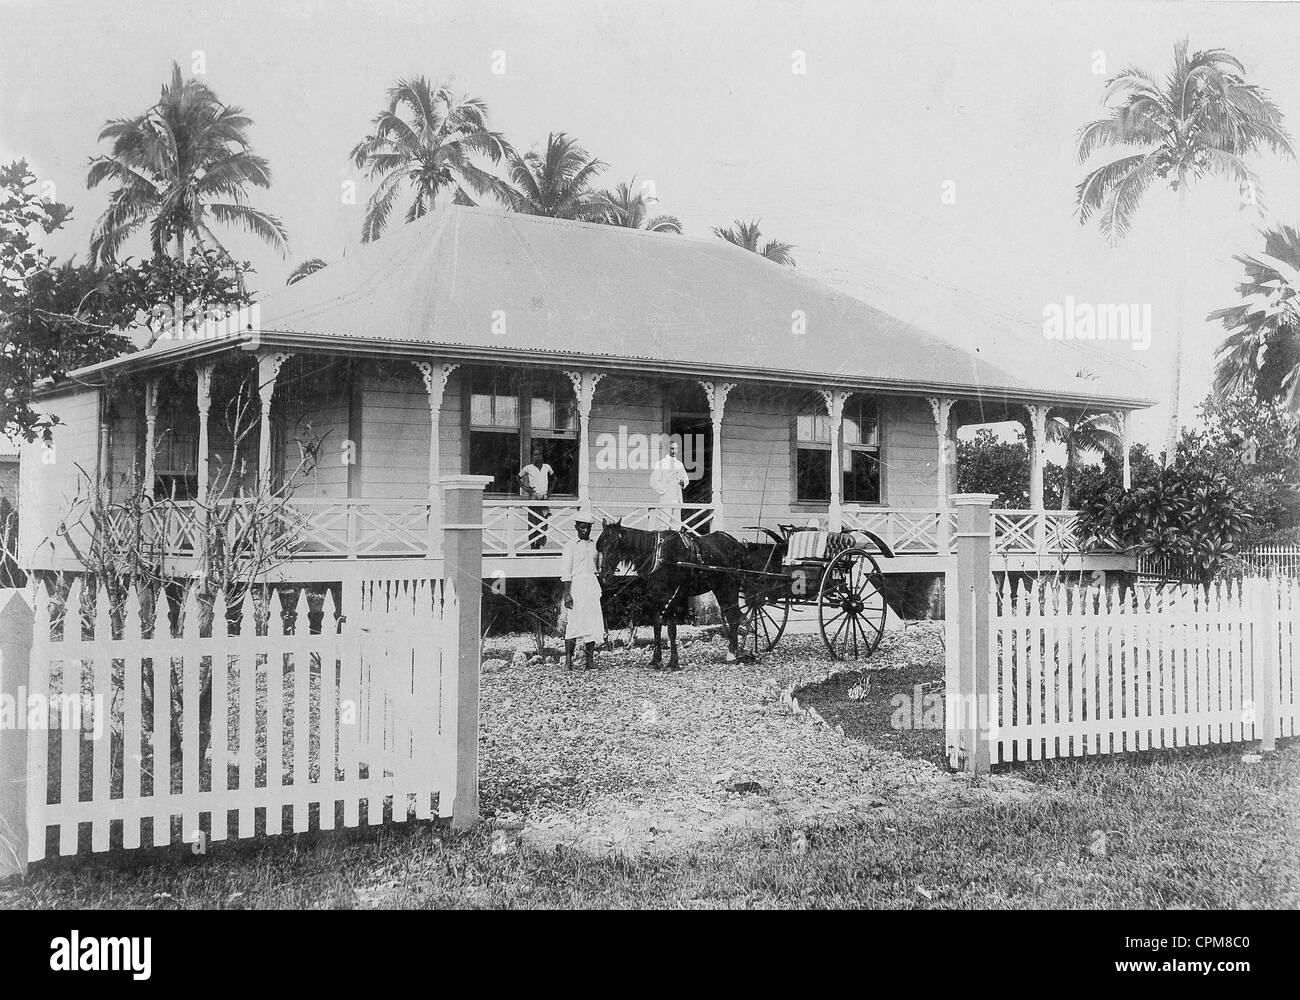 Maison d'un fonctionnaire colonial allemand à Apia aux Samoa, 1904 Banque D'Images